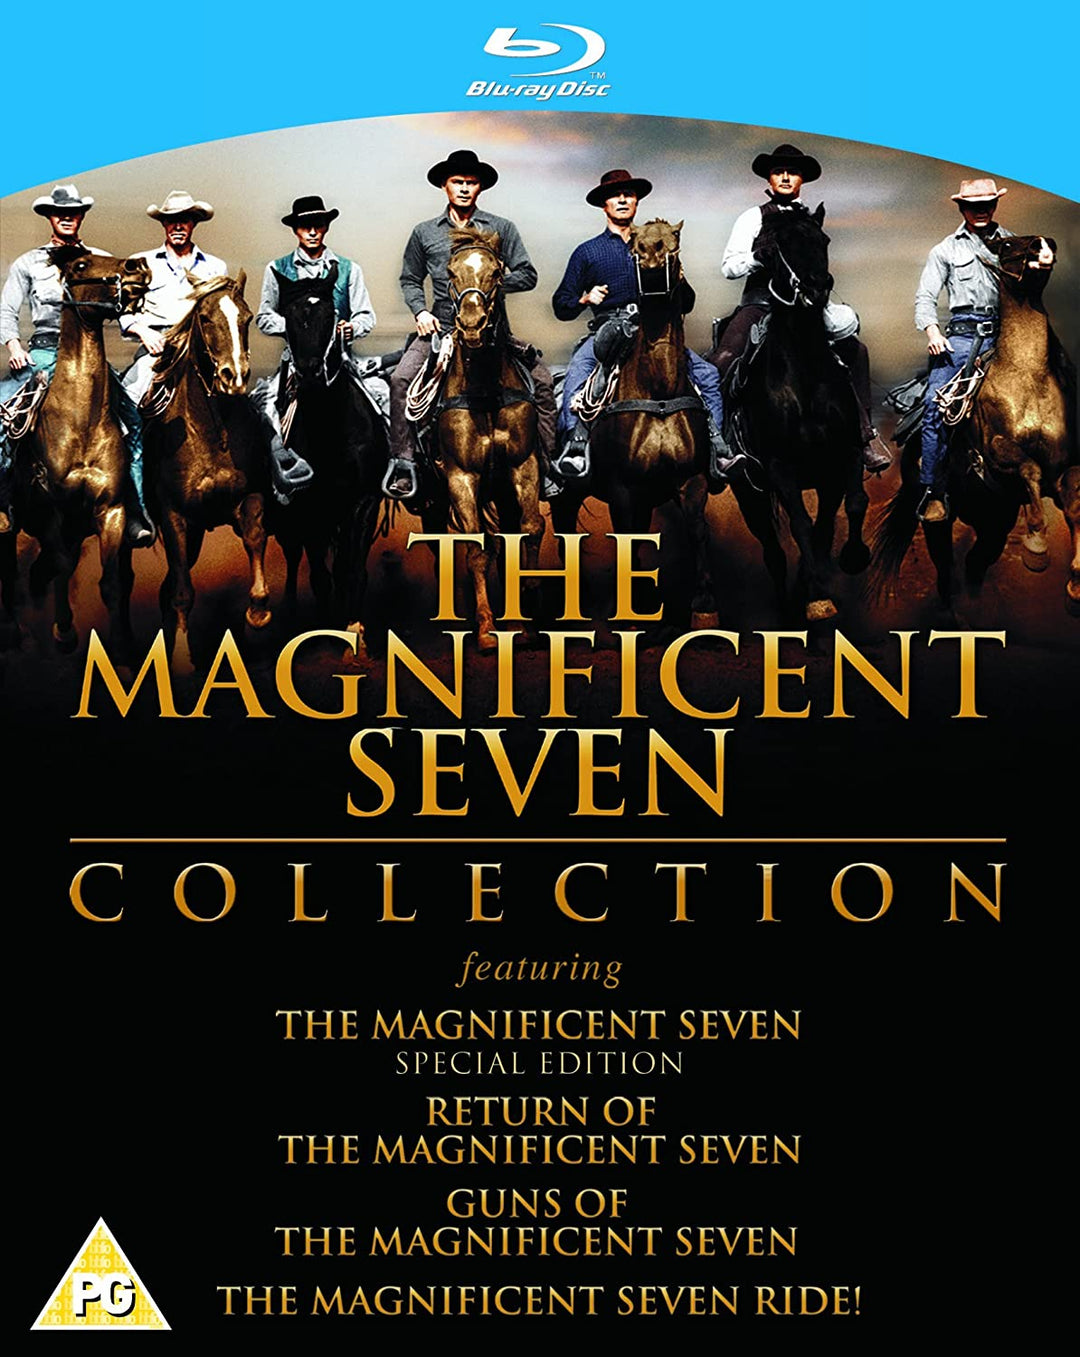 Colección The Magnificent Seven [Blu-ray] [1960] [Región libre]